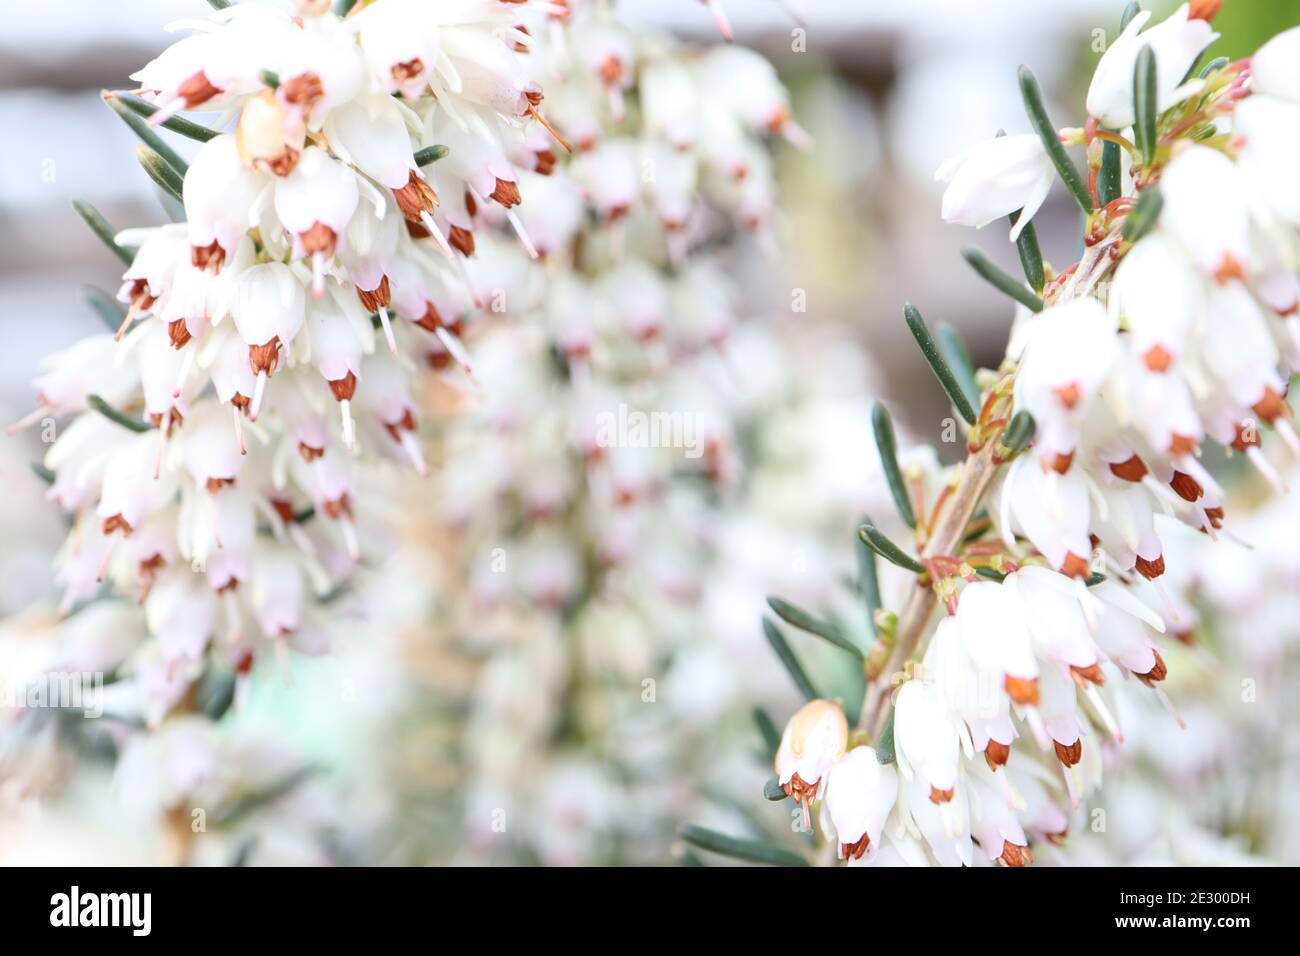 Erica carnea ‘Sora Regina d’inverno erica Snow Queen – grappoli di piccoli fiori bianchi a forma di campana su steli con foglie simili ad aghi gennaio, Inghilterra, Regno Unito Foto Stock